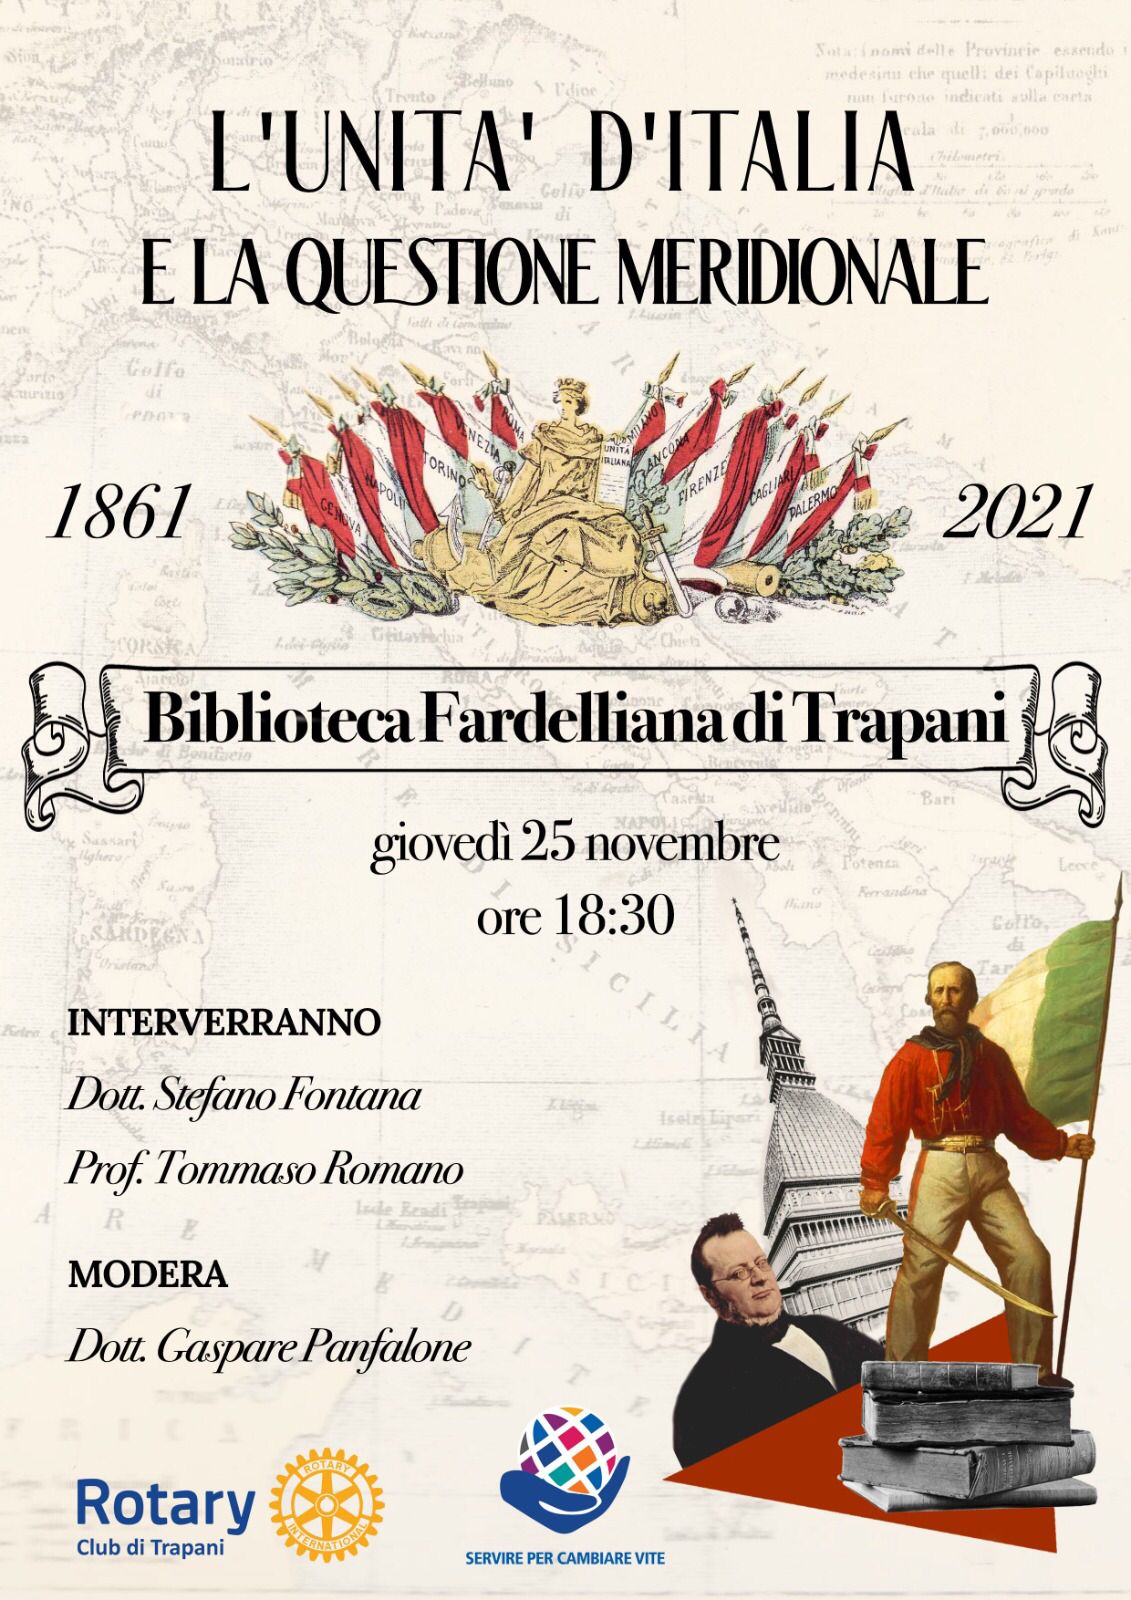 Convegno su "L'unità d'Italia e la questione meridionale", giovedì 25 novembre alla Biblioteca Fardelliana di Trapani